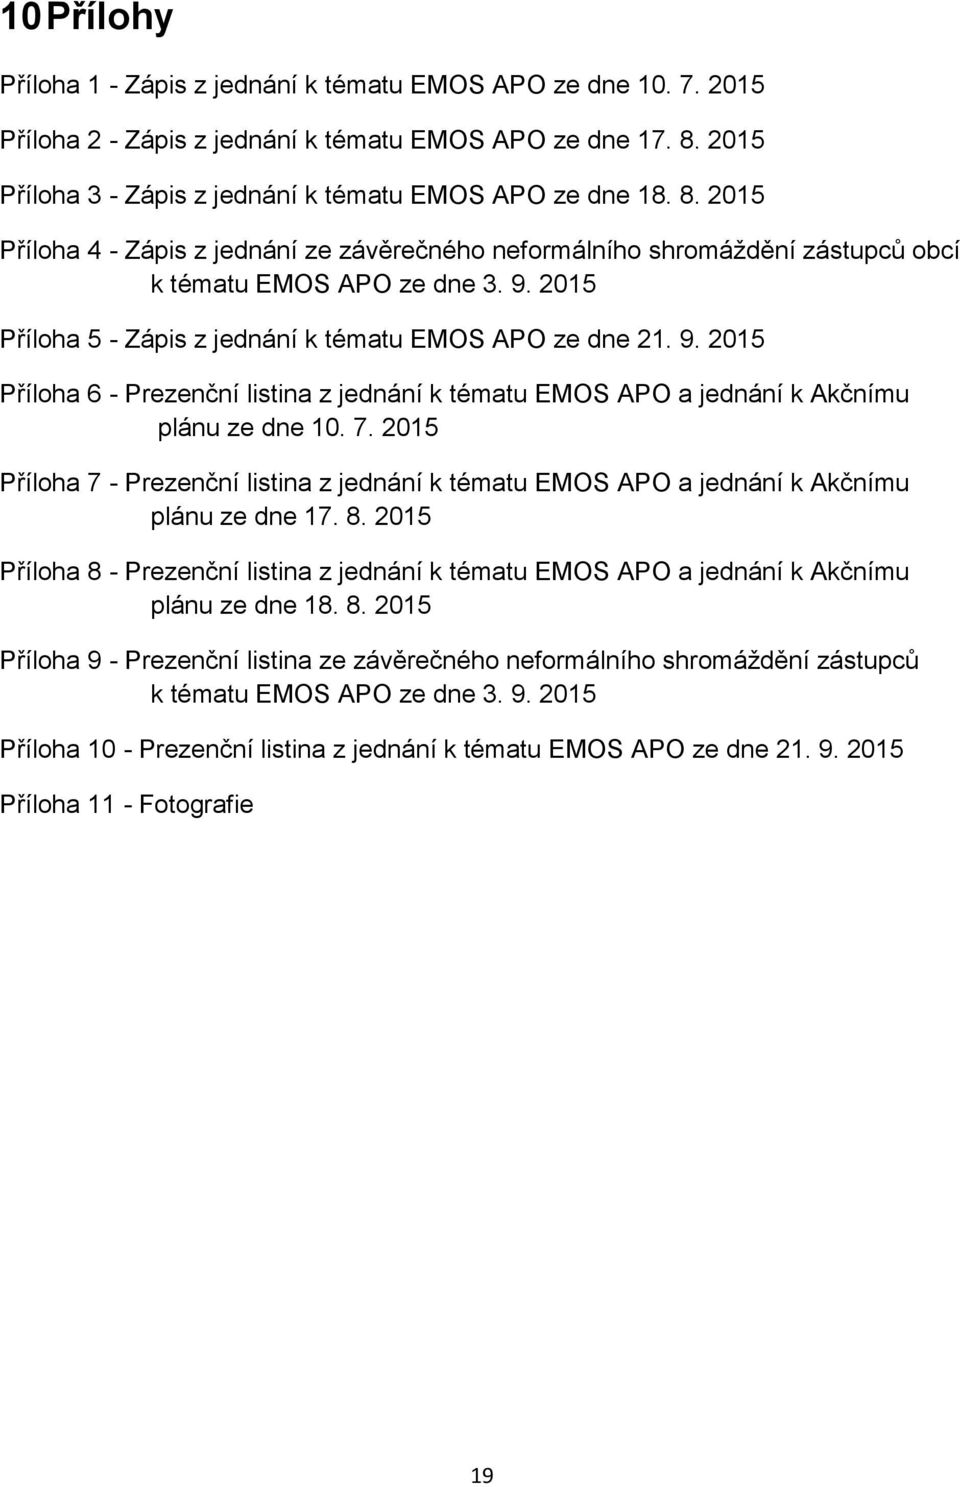 2015 Příloha 5 - Zápis z jednání k tématu EMOS APO ze dne 21. 9. 2015 Příloha 6 - Prezenční listina z jednání k tématu EMOS APO a jednání k Akčnímu plánu ze dne 10. 7.